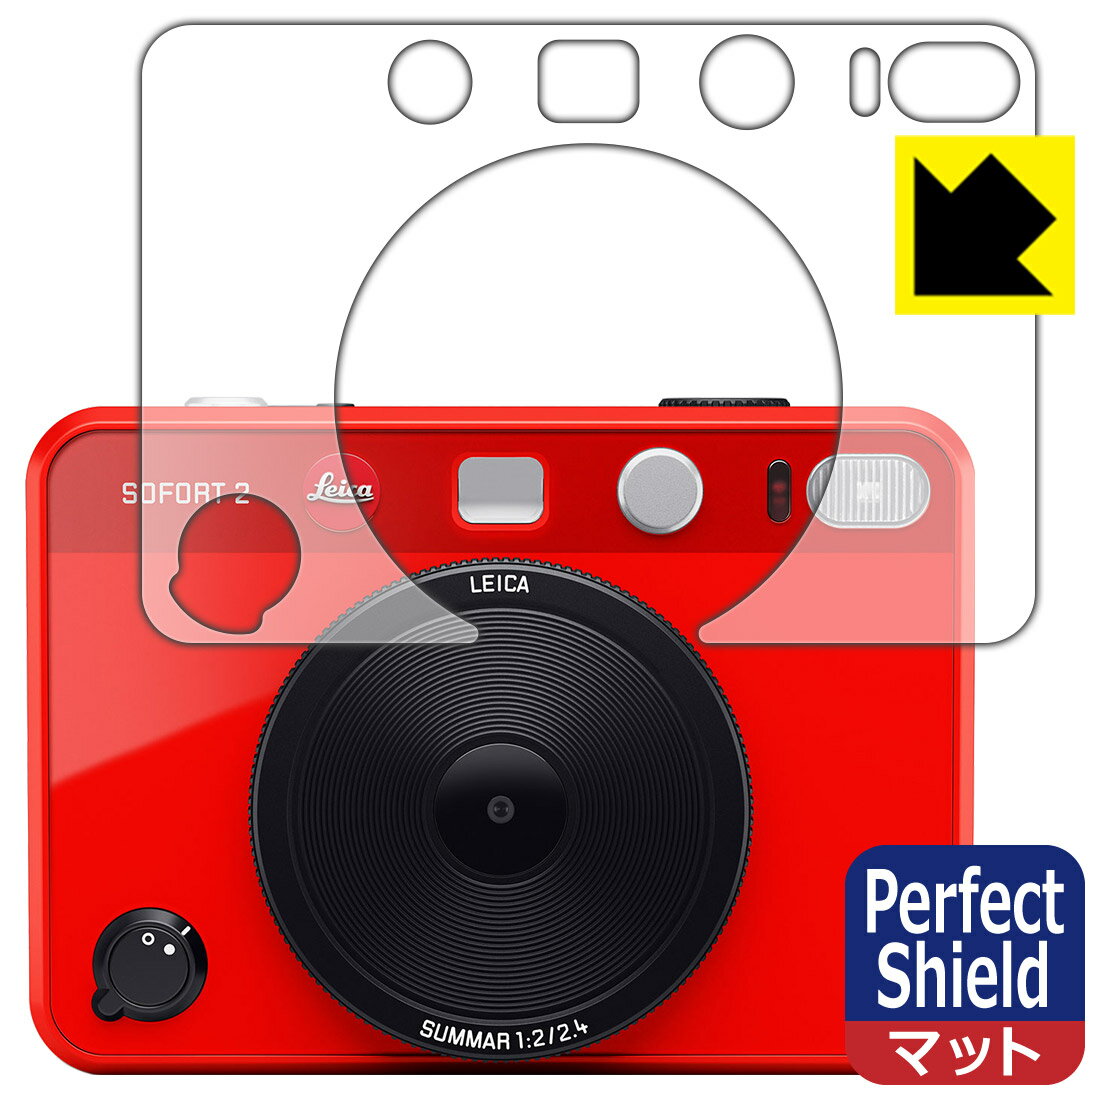 【スーパーSALE 10%OFF】PDA工房 ライカ ゾフォート2 (LEICA SOFORT 2) 対応 PerfectShield 保護 フィルム [レンズ側用] 反射低減 防指紋 日本製 日本製 自社製造直販